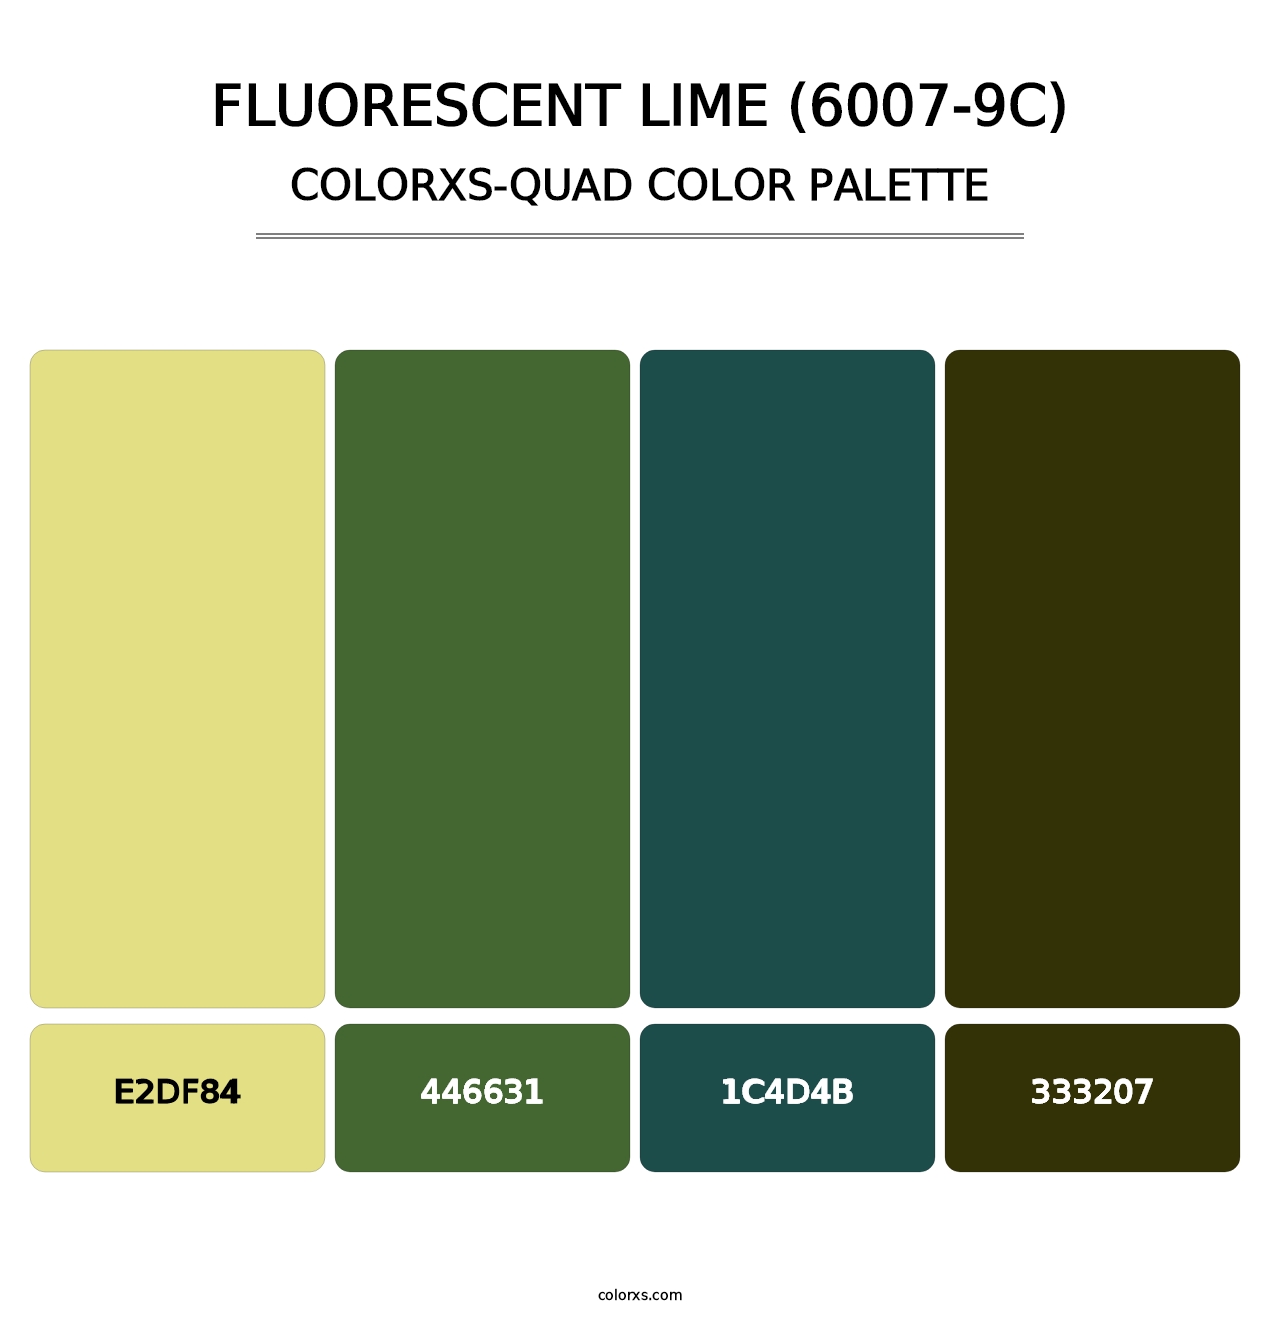 Fluorescent Lime (6007-9C) - Colorxs Quad Palette